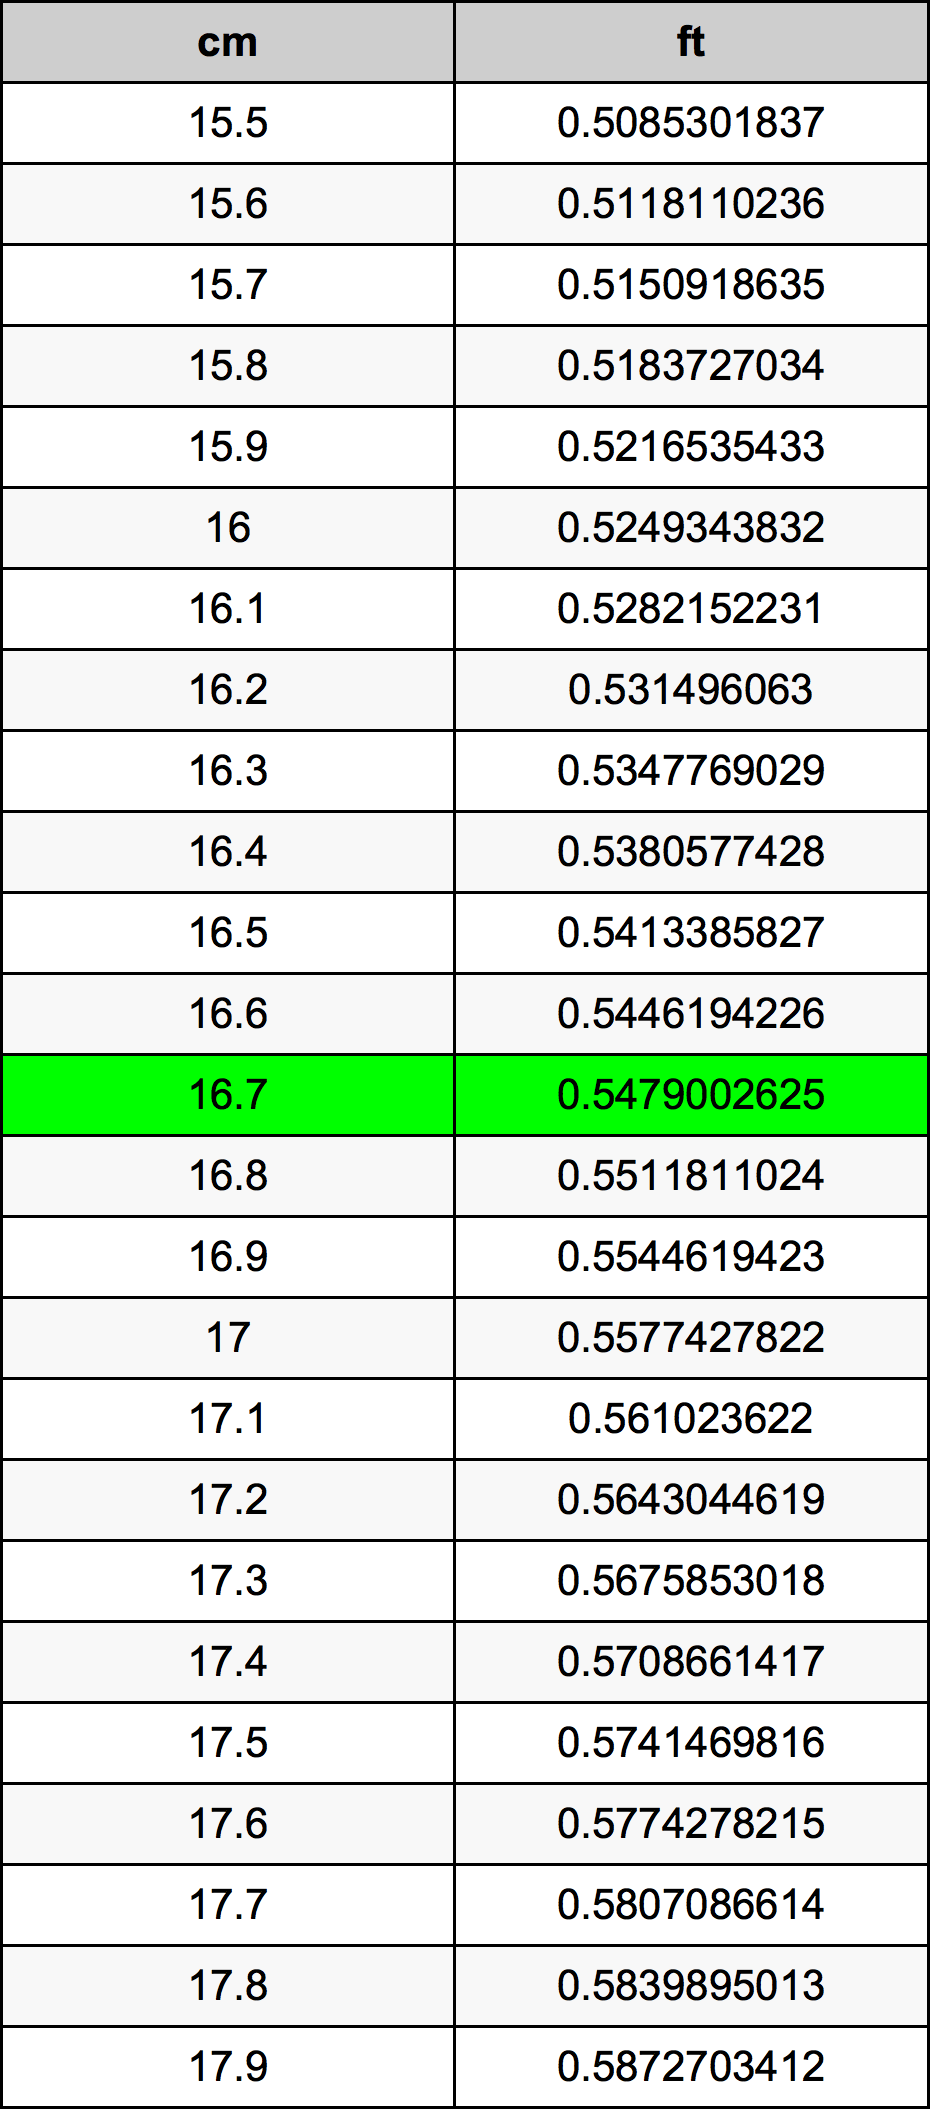 16.7 Centiméter átszámítási táblázat